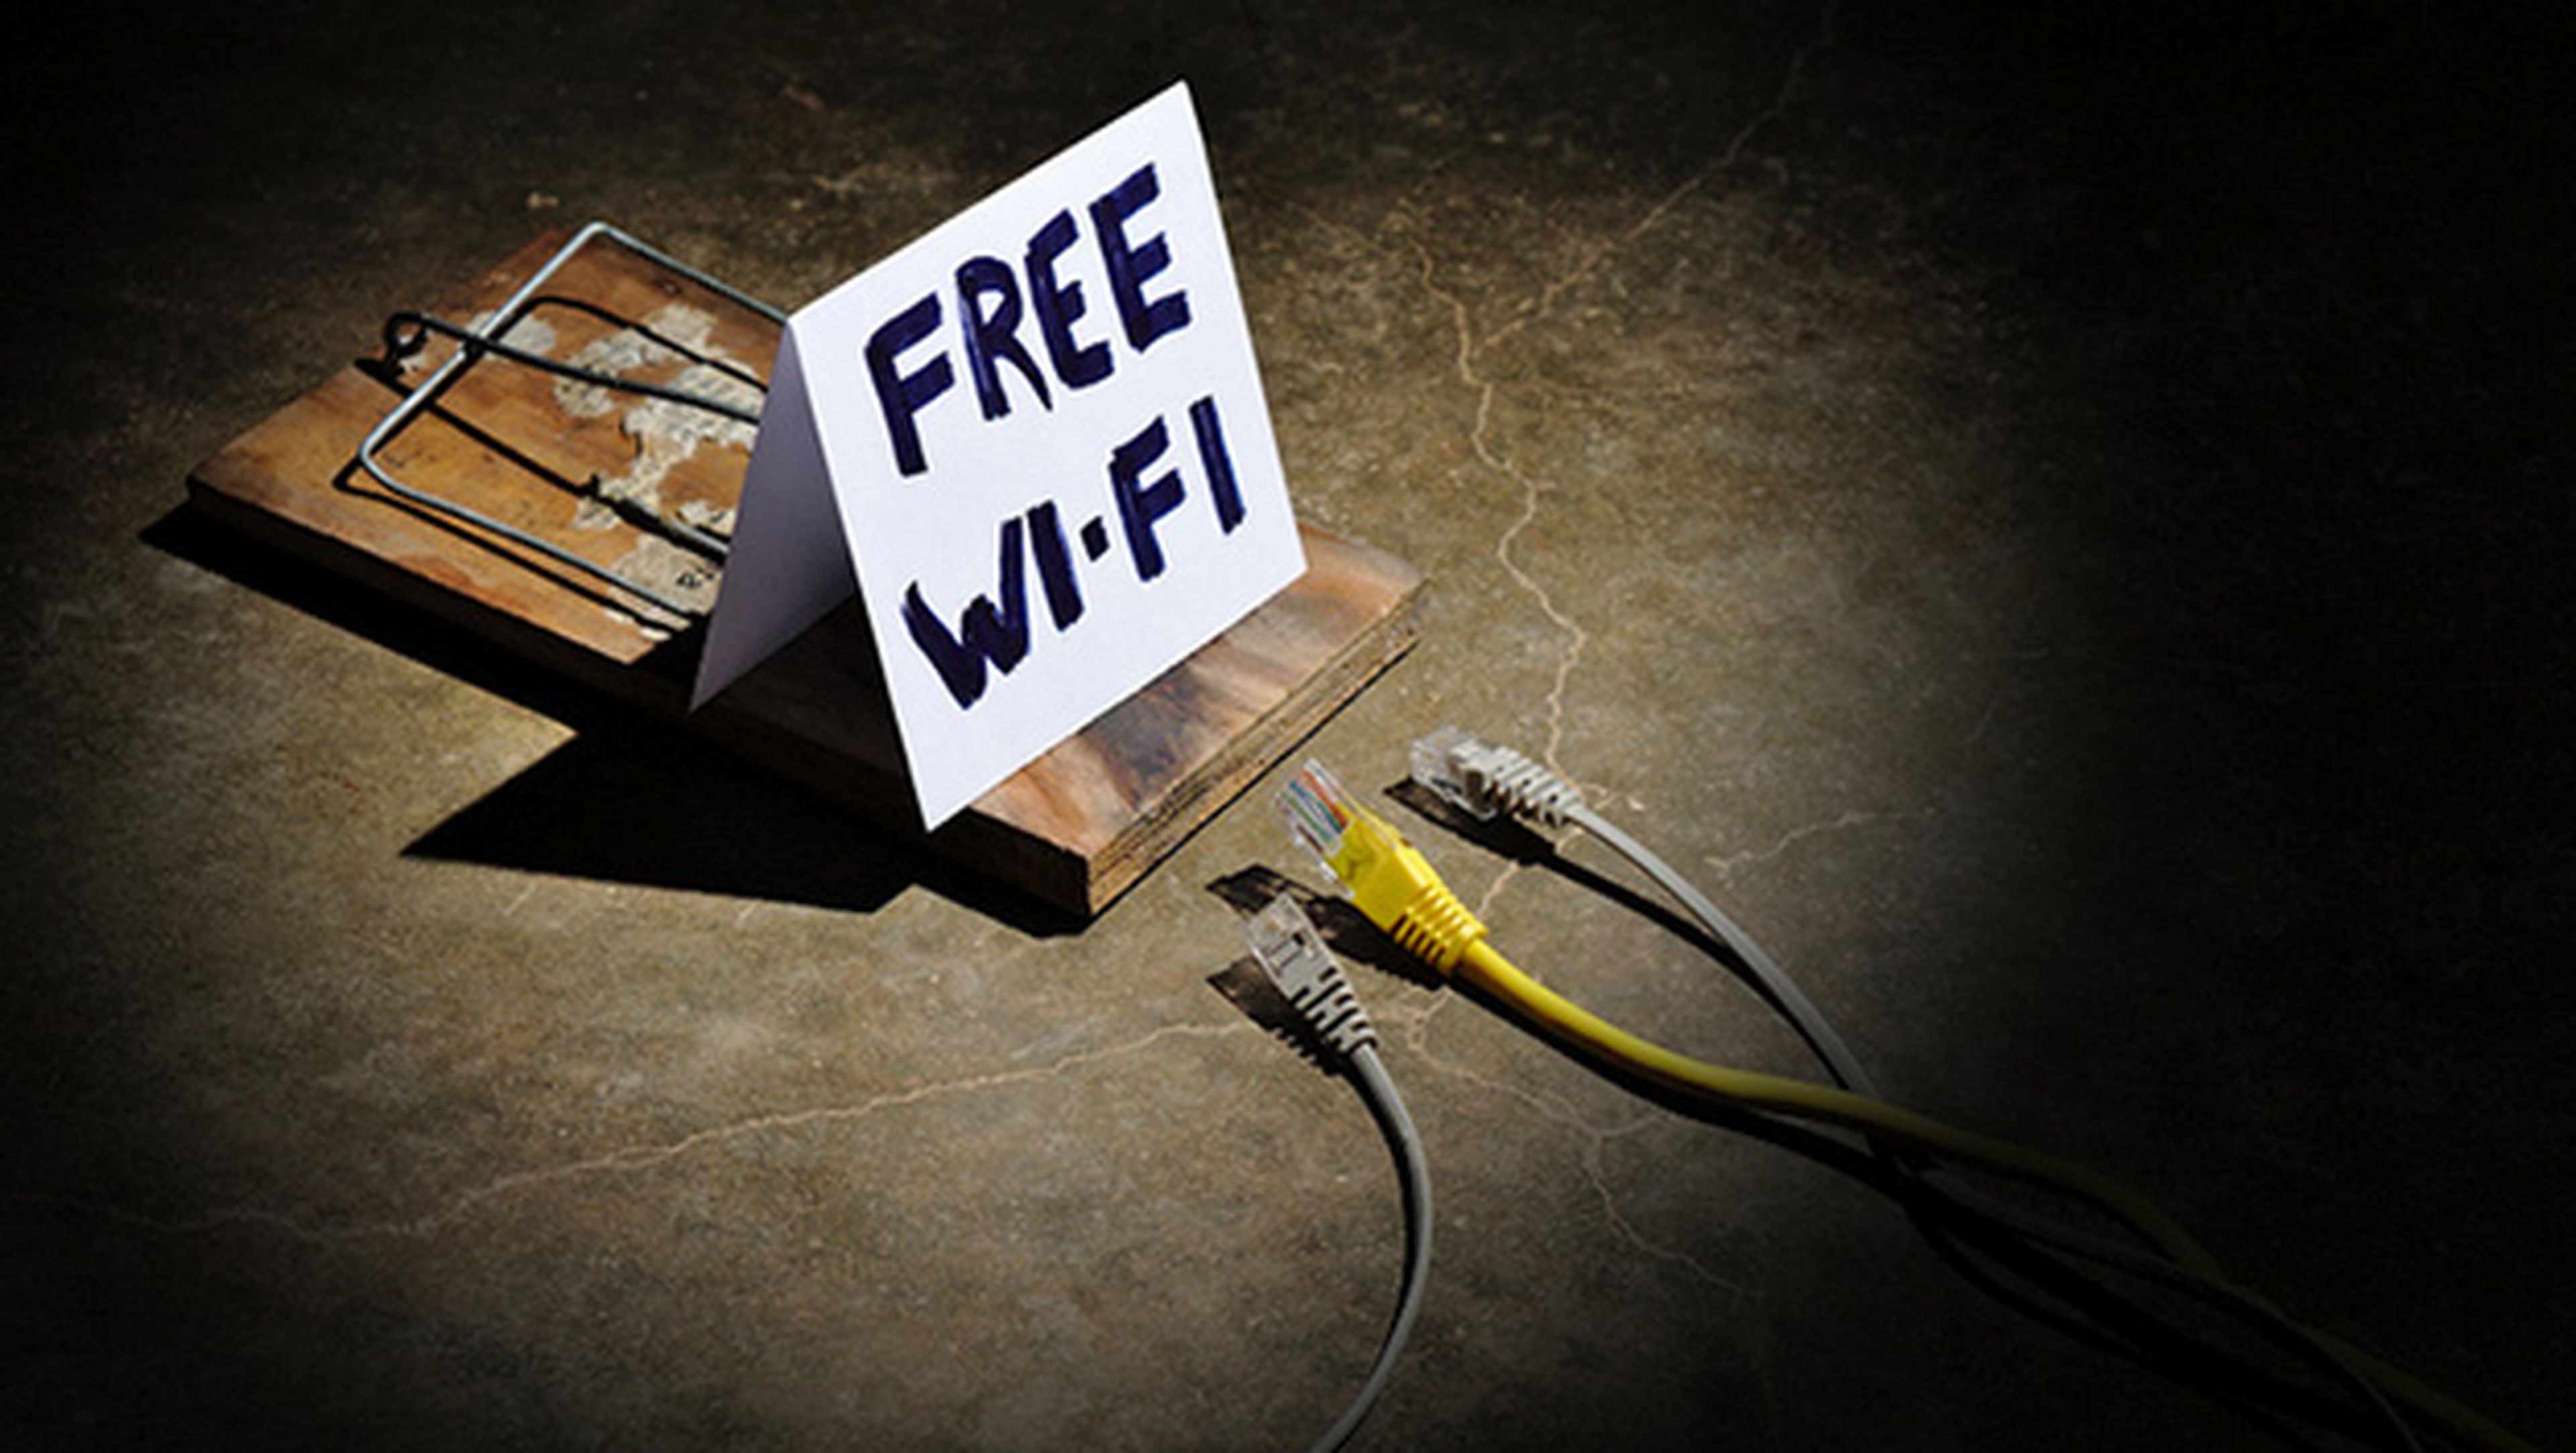 9. Las redes Wi-Fi abiertas son inseguras